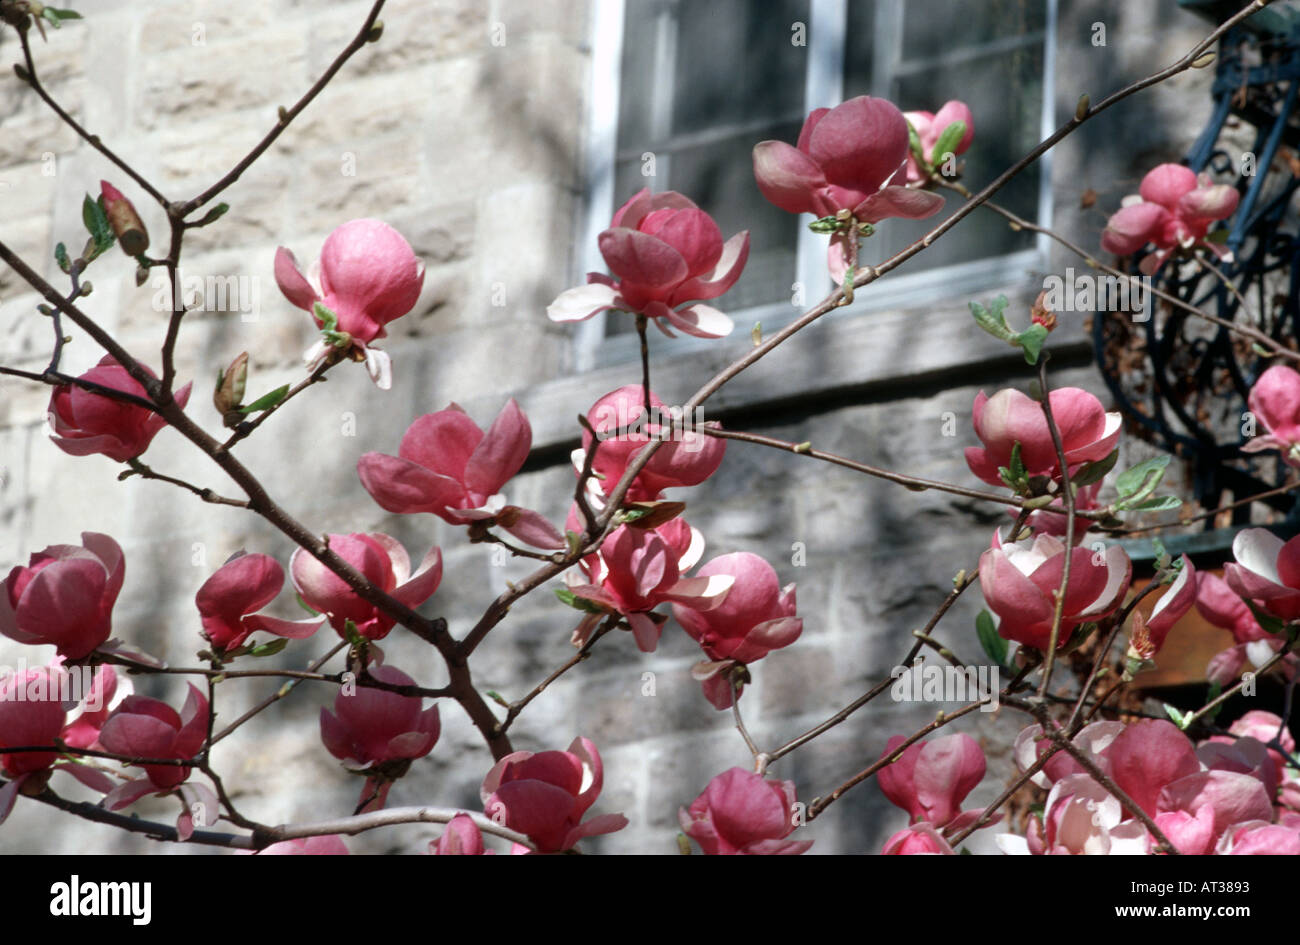 Magnolia tree blosom in spring Montreal Quebec Canada Stock Photo